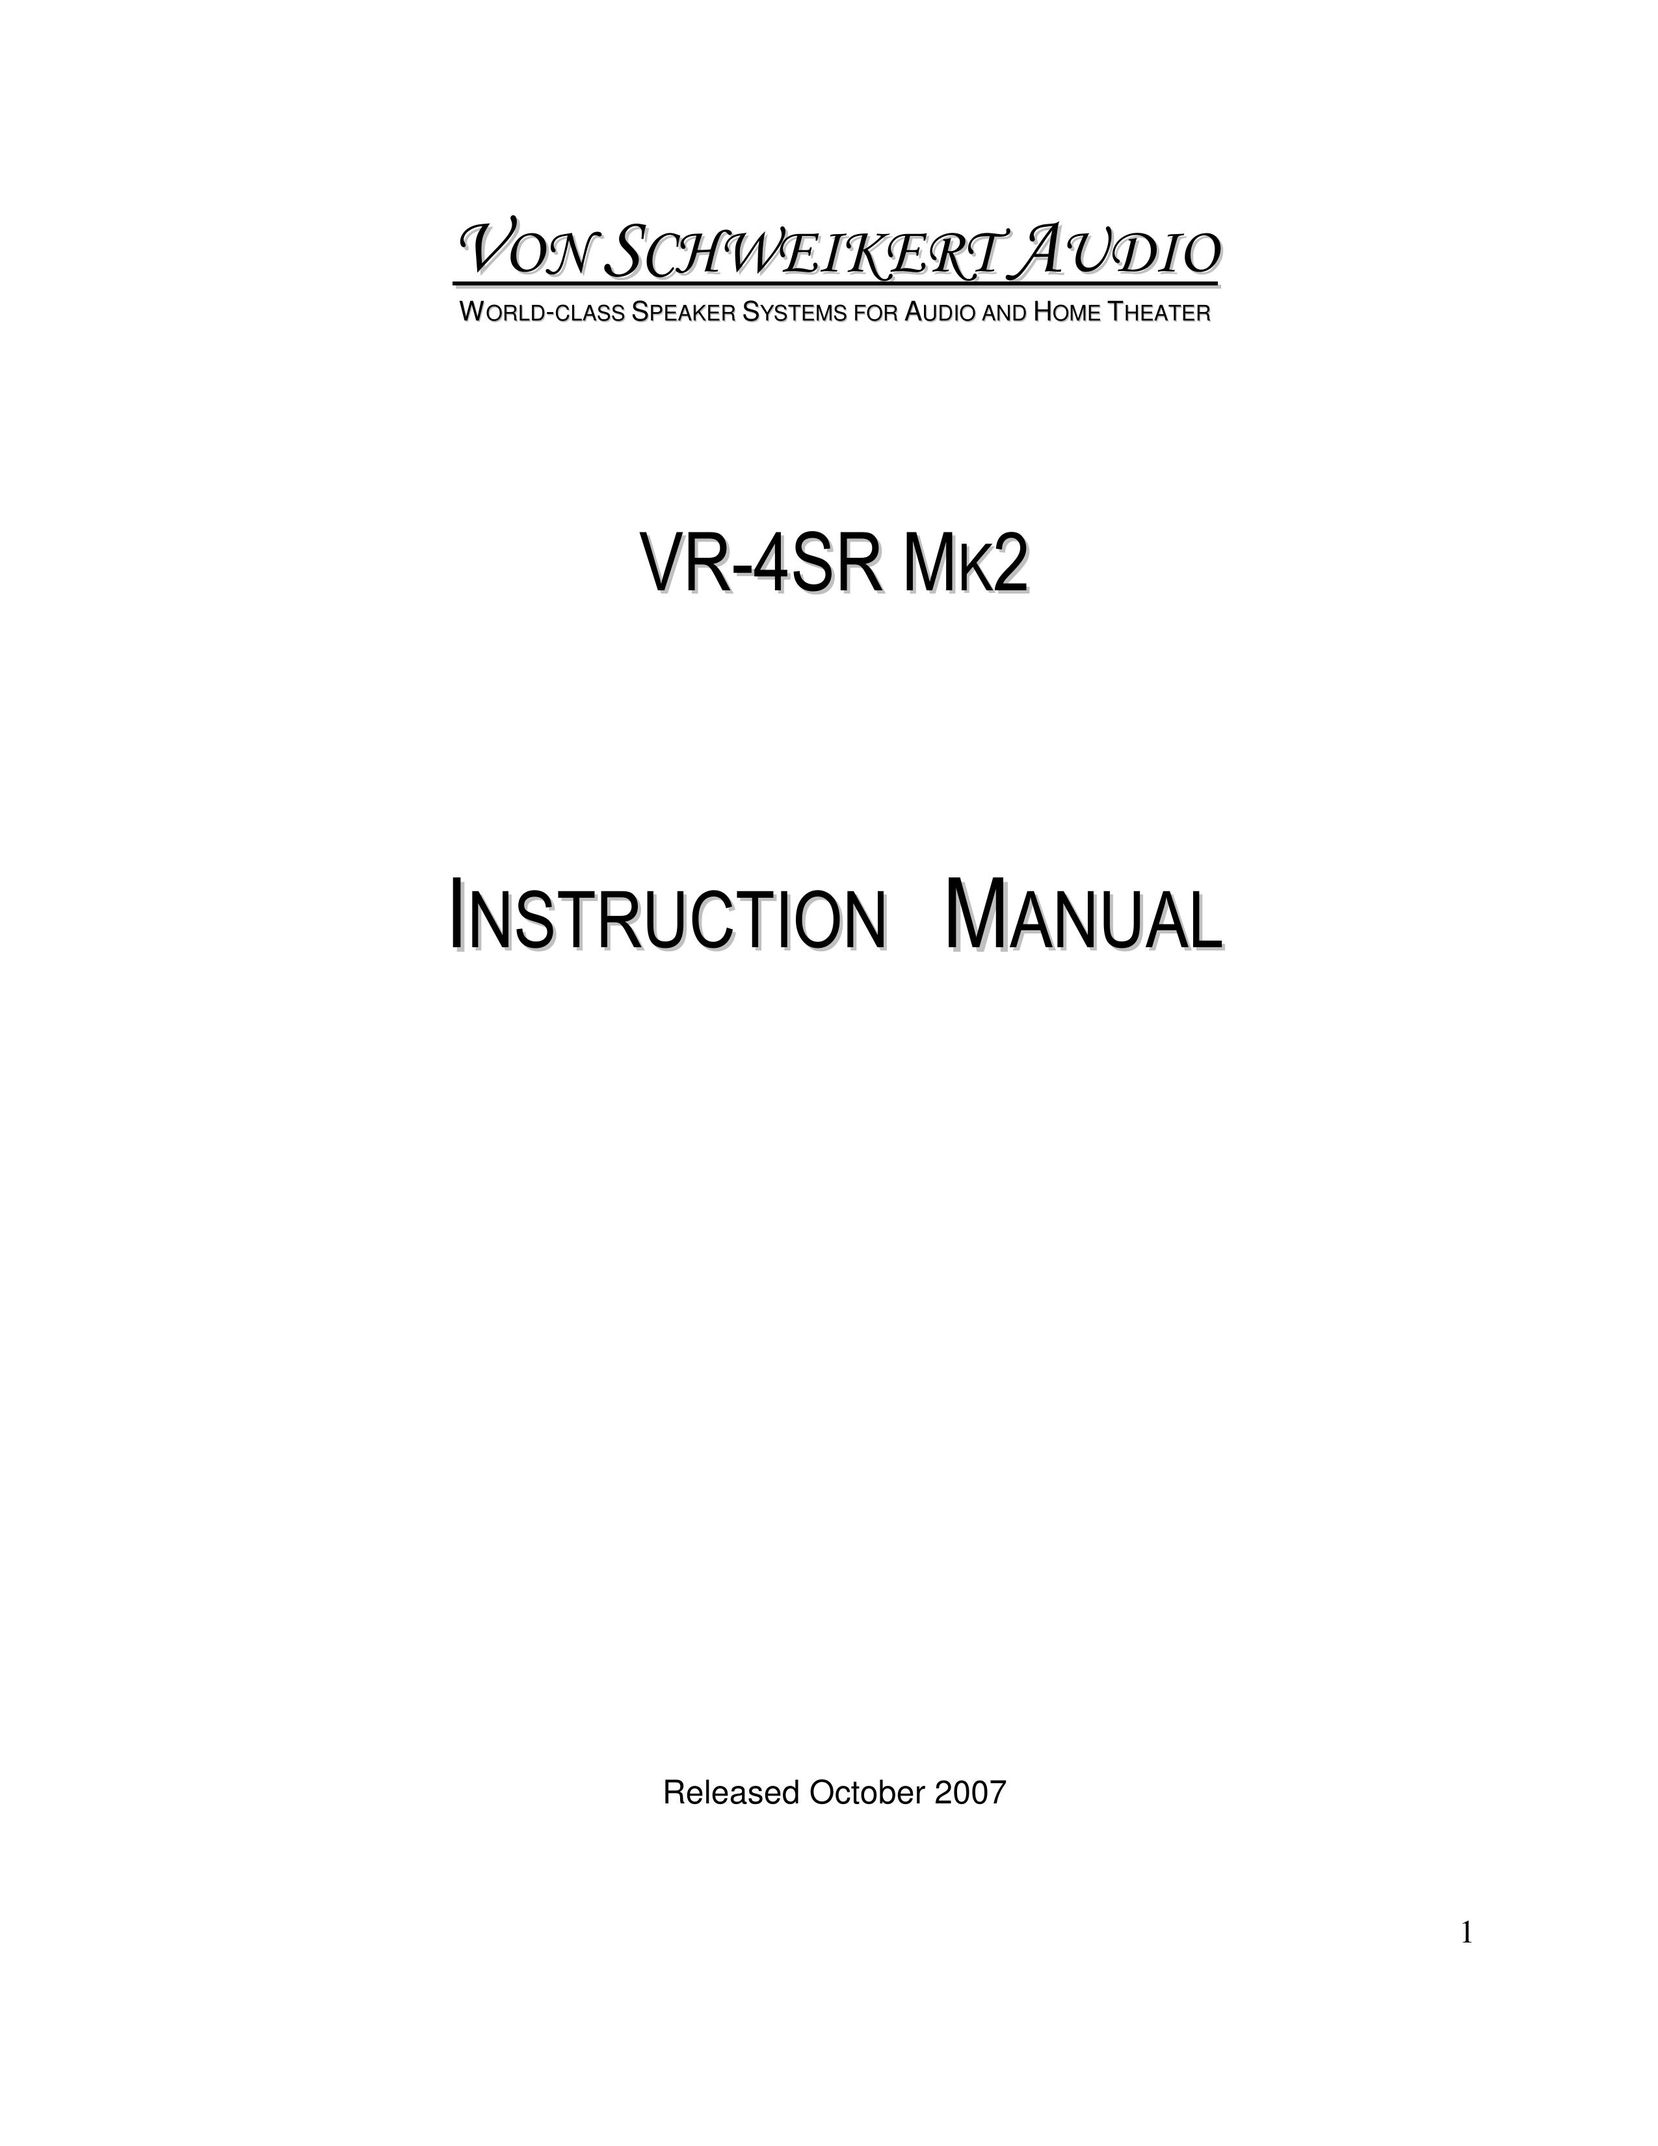 Von Schweikert Audio VR-4SR MK2 Speaker System User Manual